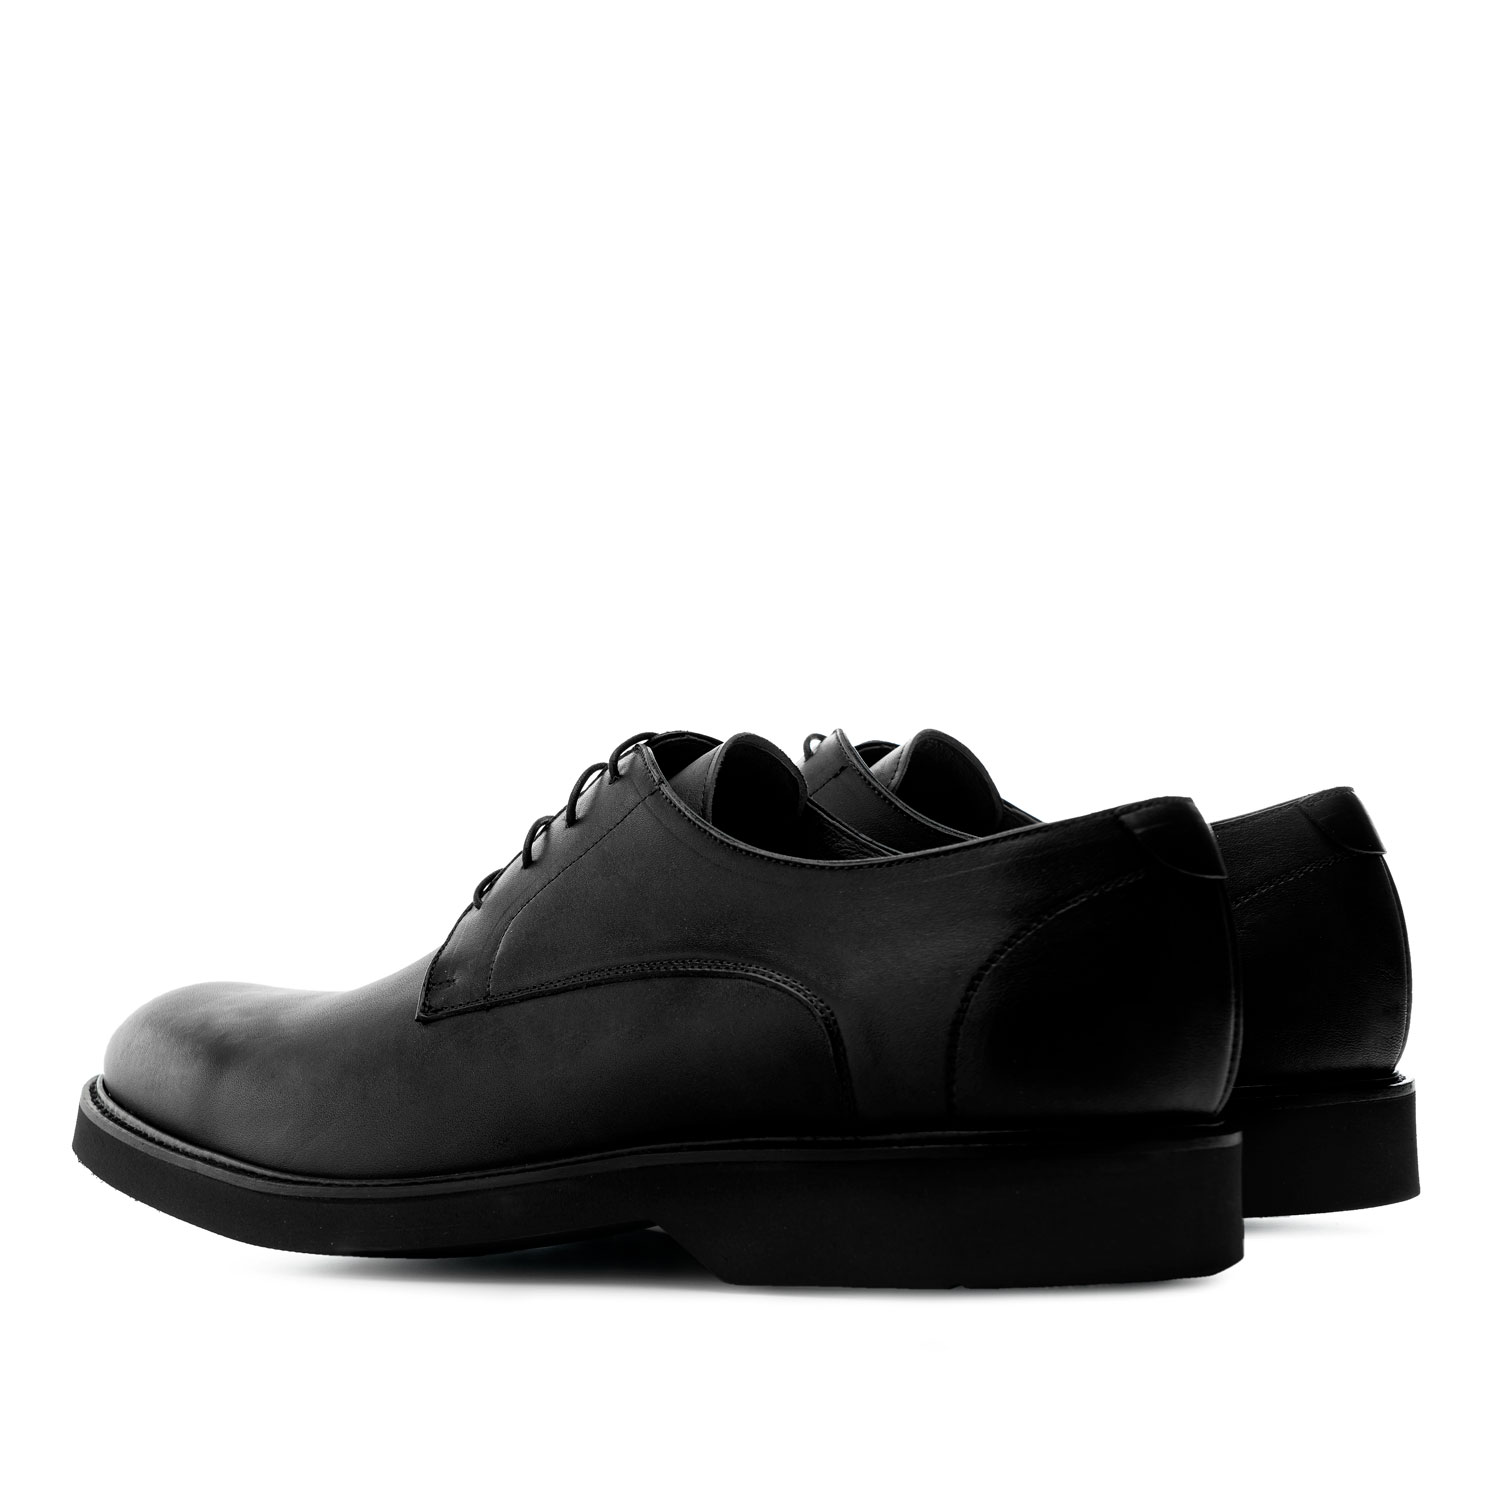 Chaussures style Oxford en cuir de couleur Noir 